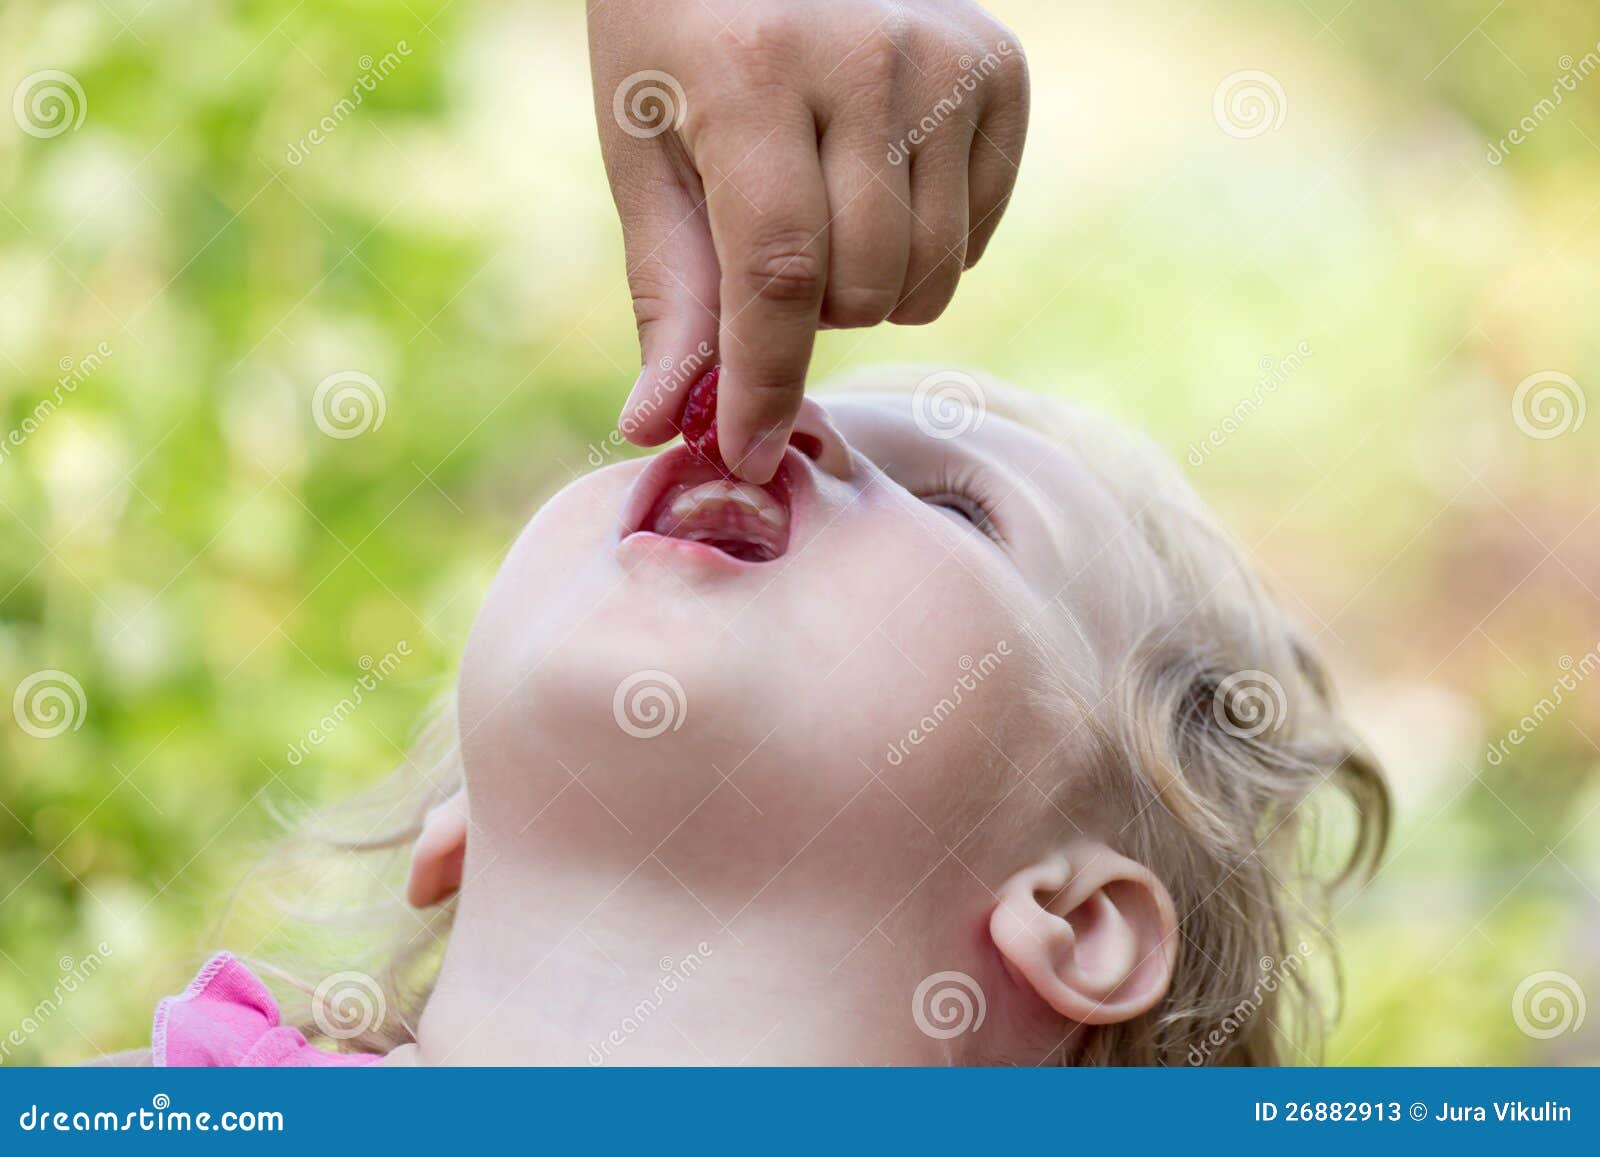 юной девочке сперму в рот фото 17